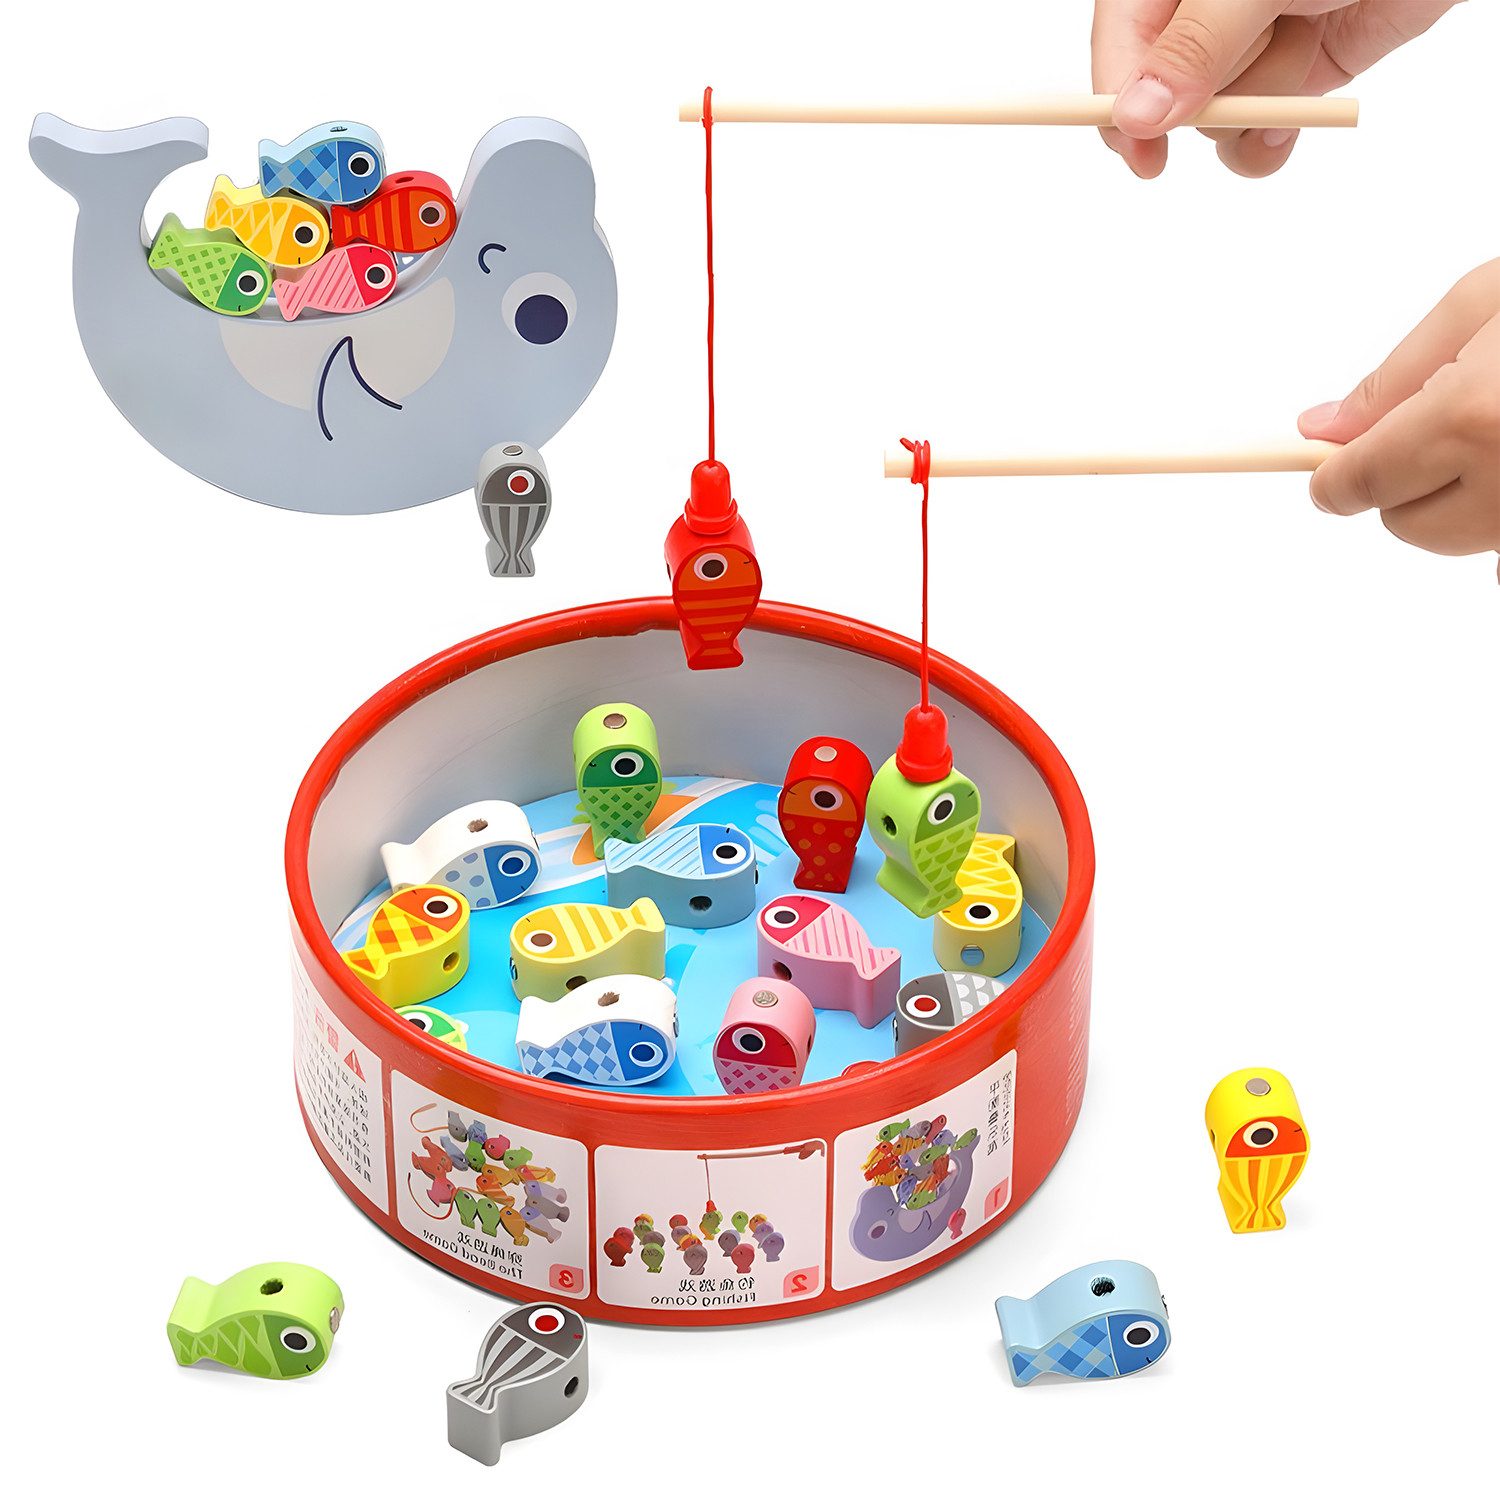 LBLA Lernspielzeug magnetisches Angelspiel baby, Holzspielzeug für Kinder ab 2 Jahren, Fischspielzeug, Montessori, Feinmotorik Lernen, Weihnachtsgeschenk